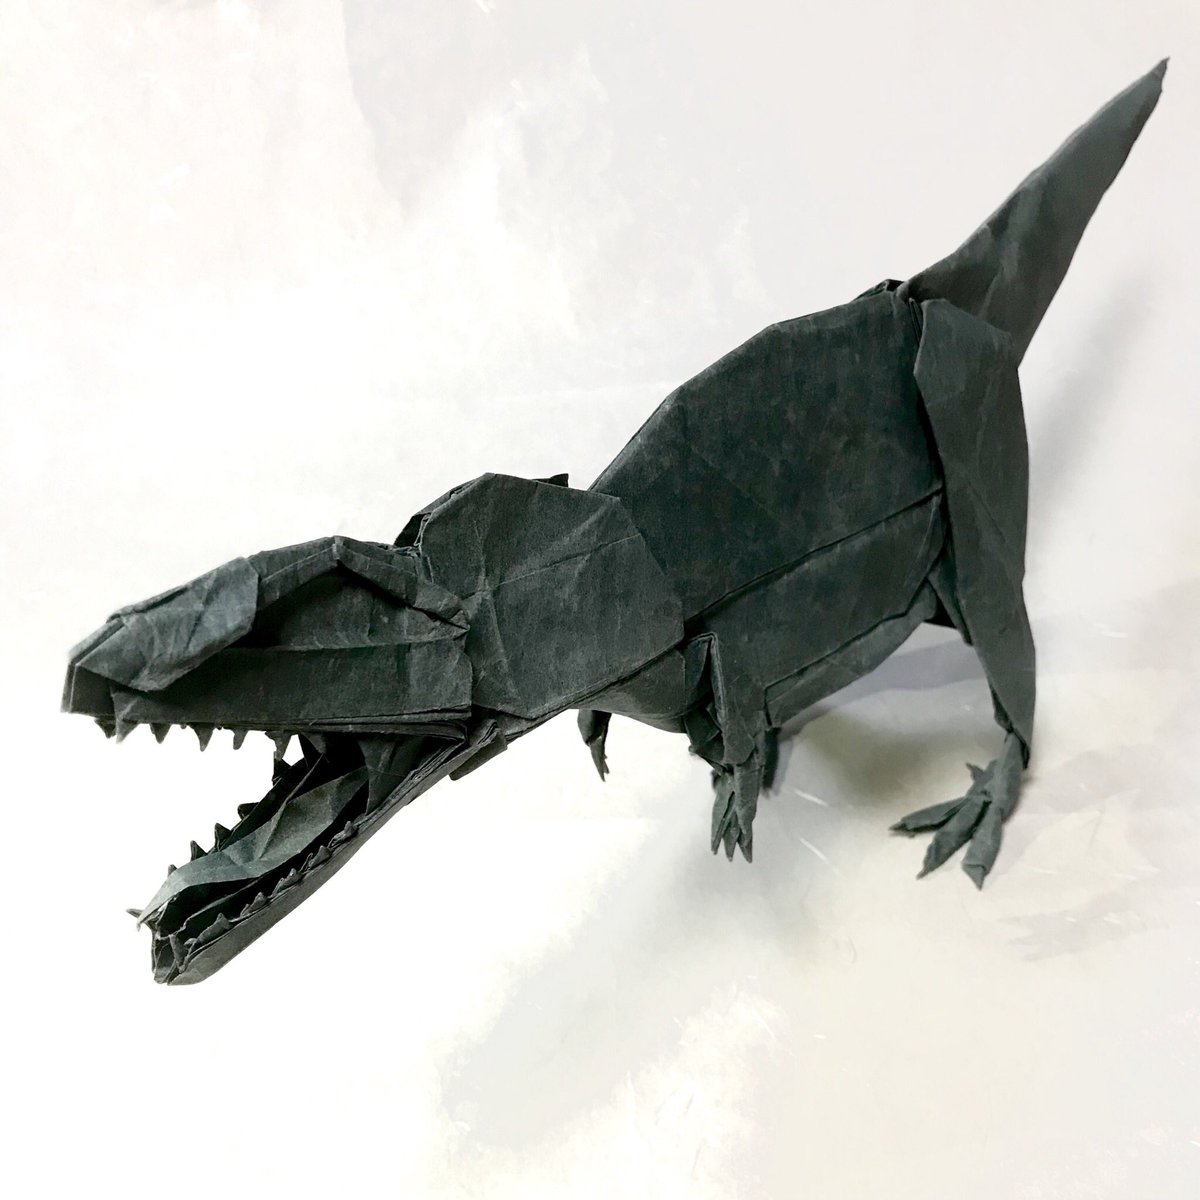 ギガノト サウルス 最強ペットの騎乗恐竜ギガノトサウルス 生息場所やテイム方法を紹介